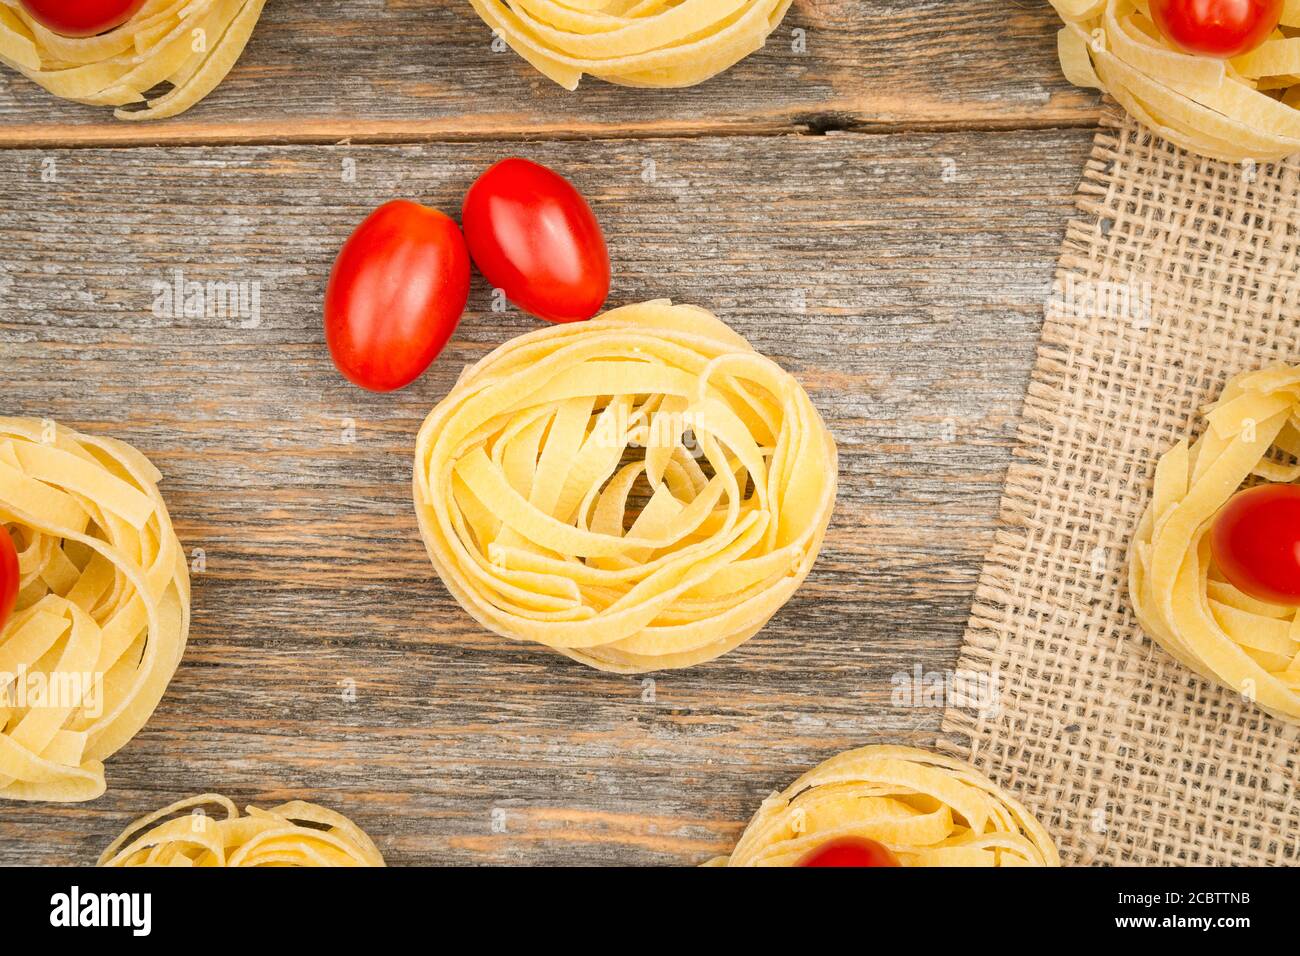 Nahaufnahme von Nestern von Tagliatelle Nudeln mit Ei-förmigen Mini roma Tomaten auf einem rustikalen Holztisch mit Sackleinen, Stockfoto